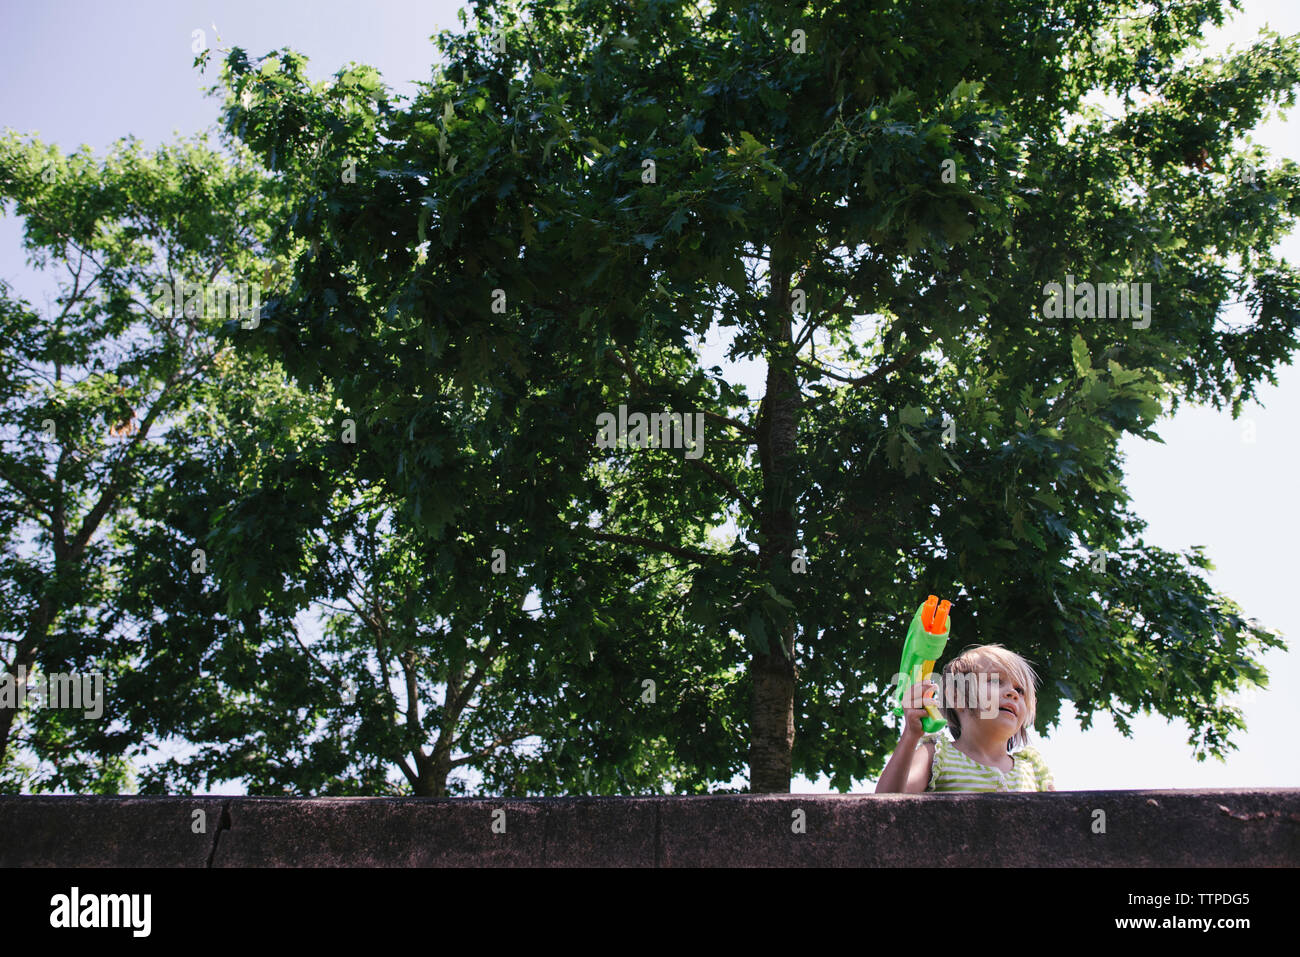 Low Angle View von Mädchen, dass Squirt gun gegen Bäume Stockfoto